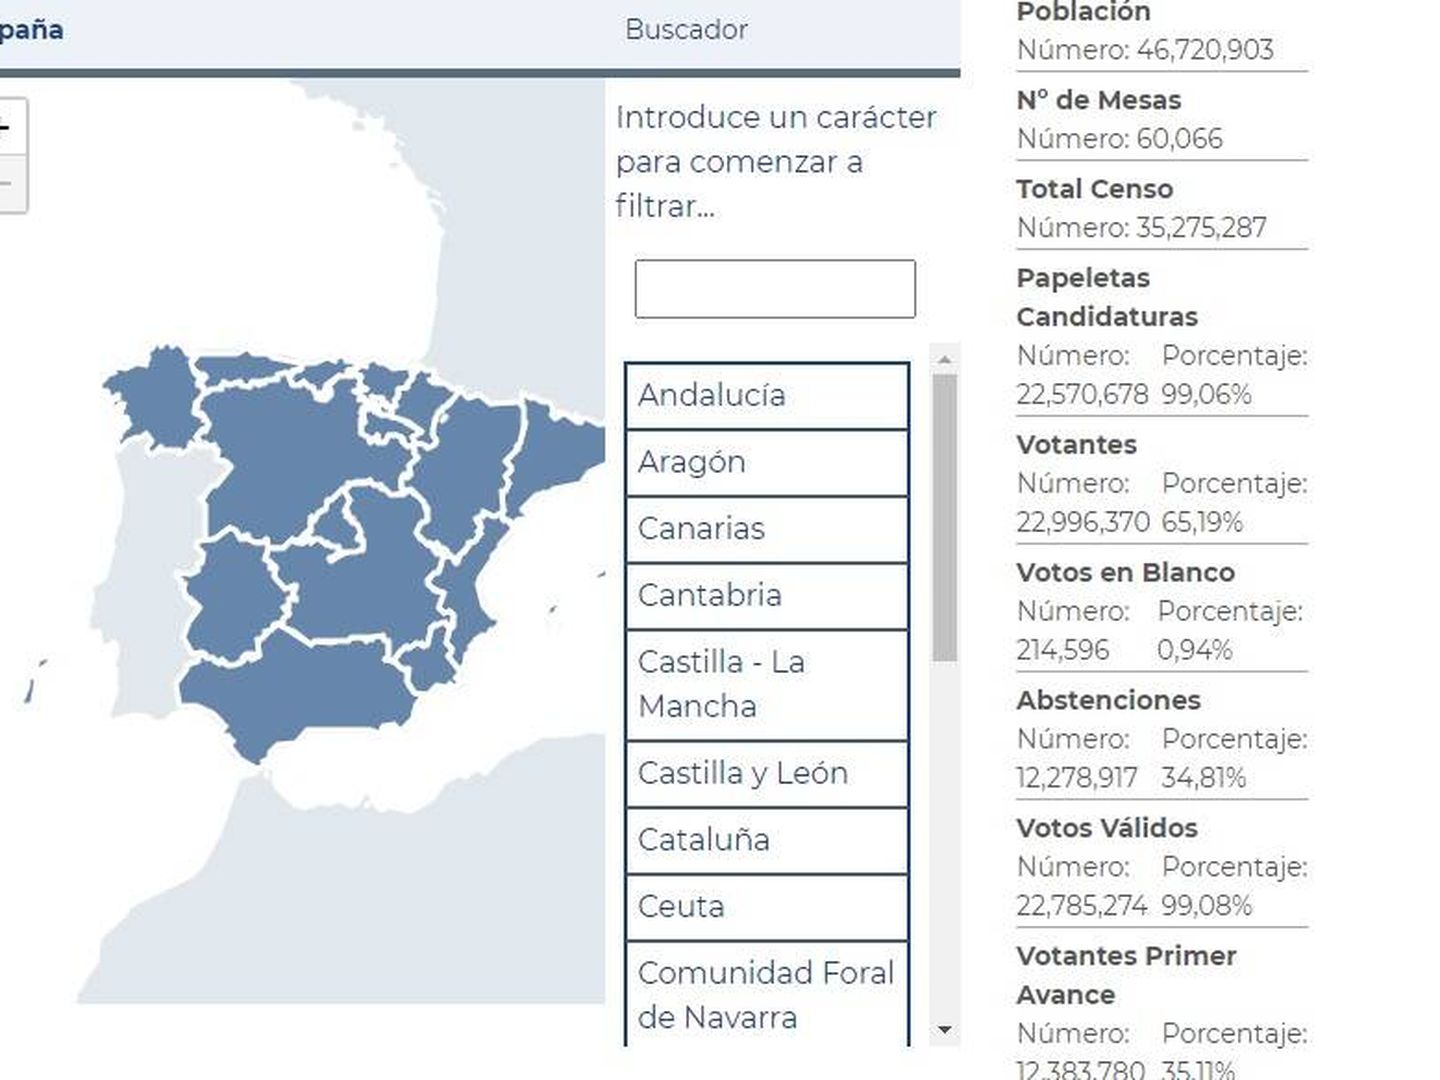 Mapa para conocer los resultados de las elecciones. (Ministerio de Interior)